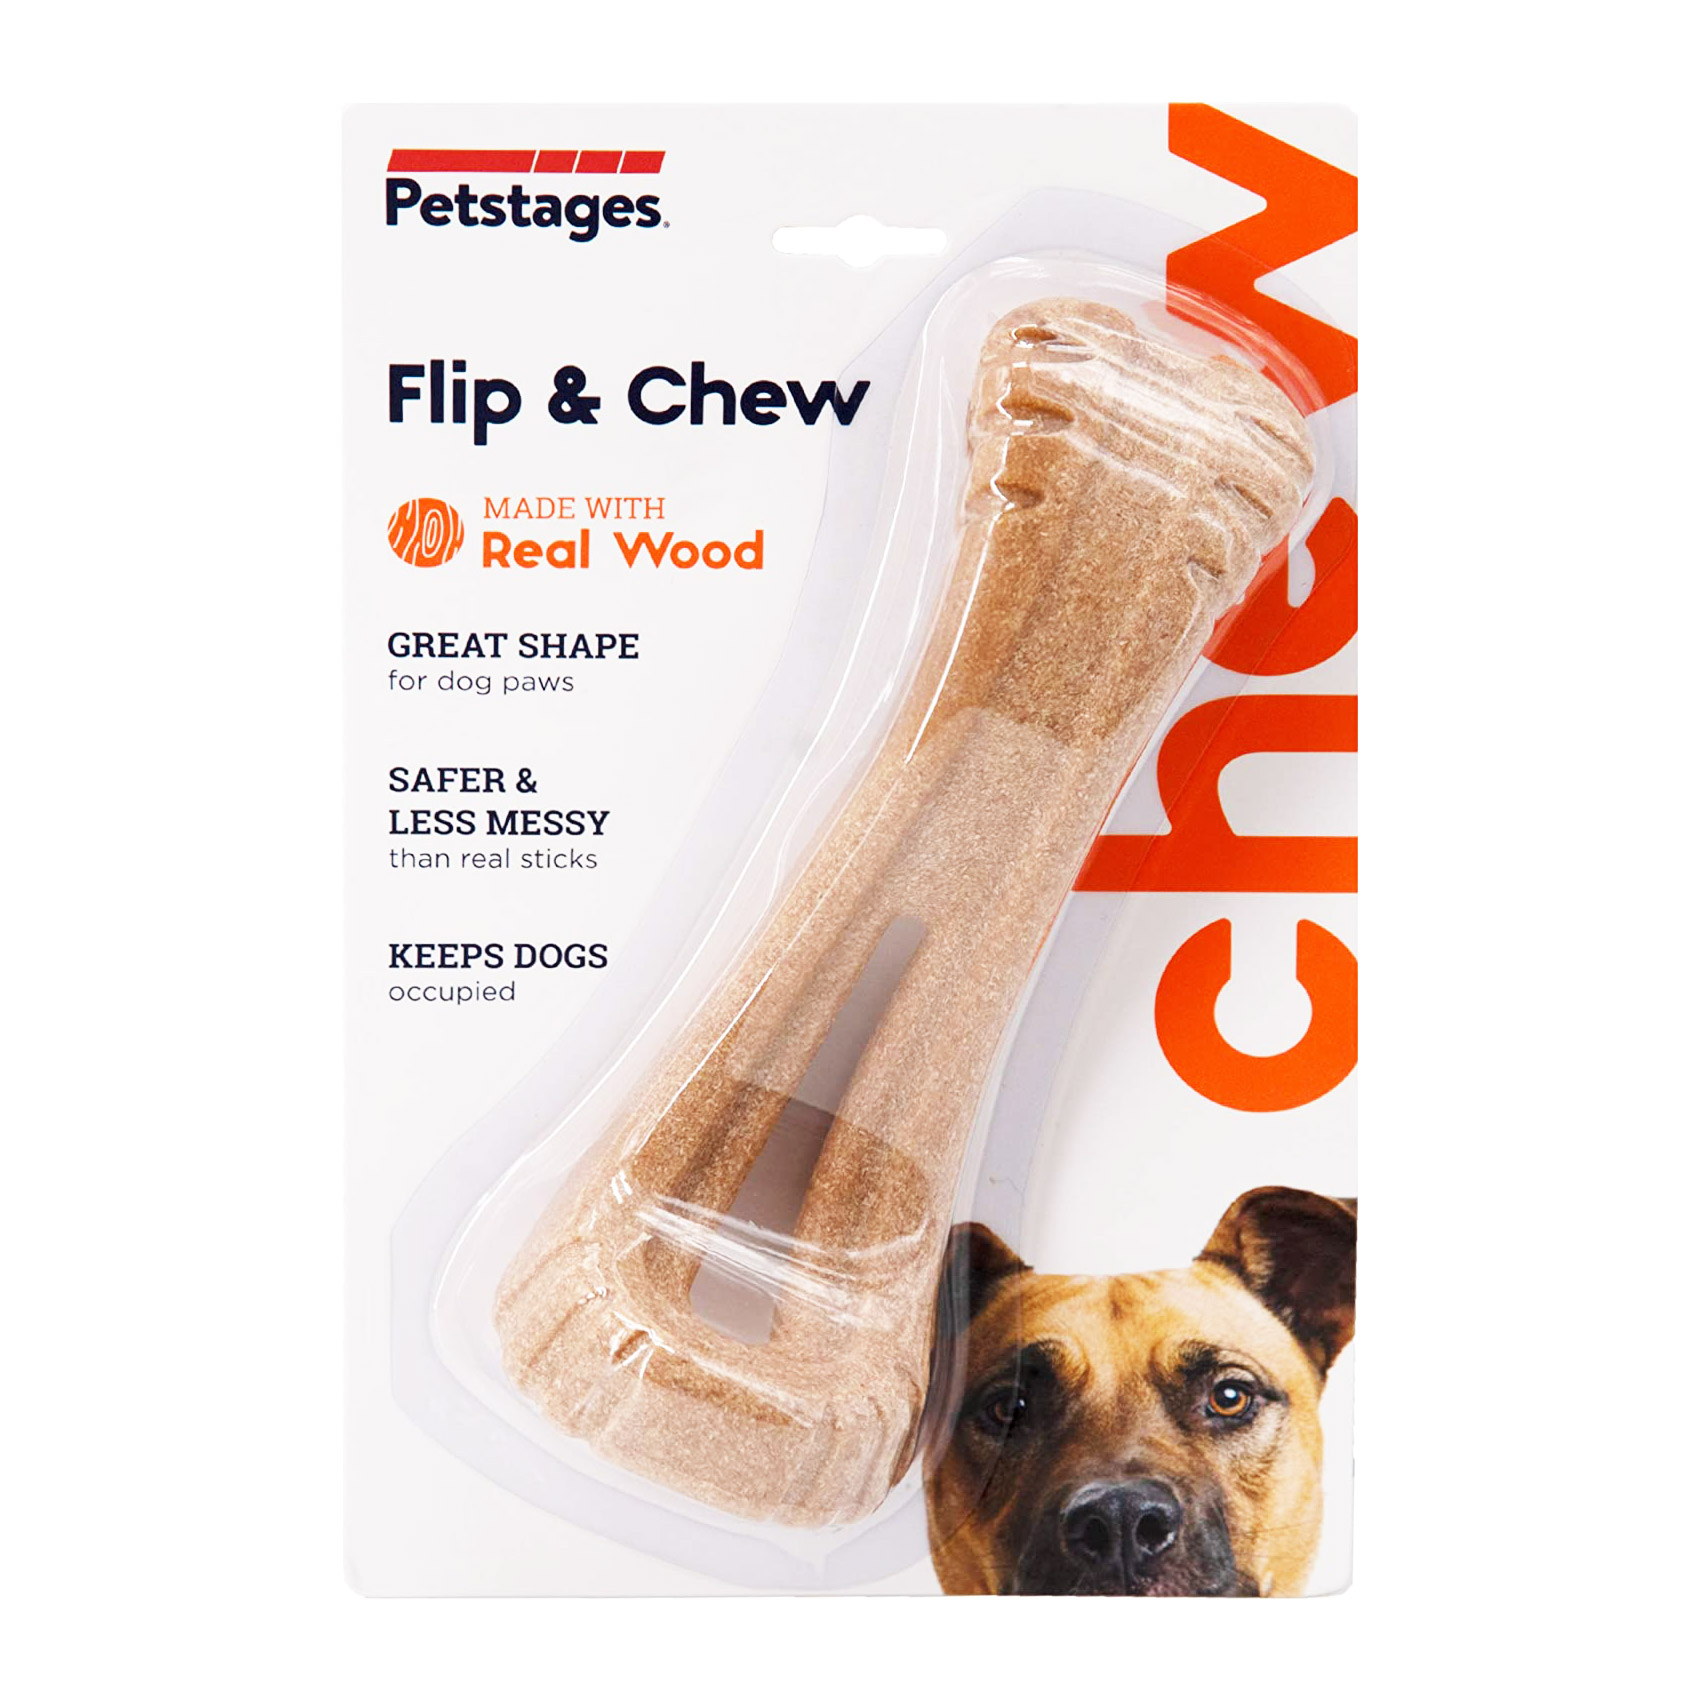 Petstages Flip & Chew กิ่งไม้แทะเล่นของสุนัข ที่ออกแบบรูปทรงพิเศษ ให้สุนัขจับถนัด พลิกกัดได้ทั้ง 2 ด้าน